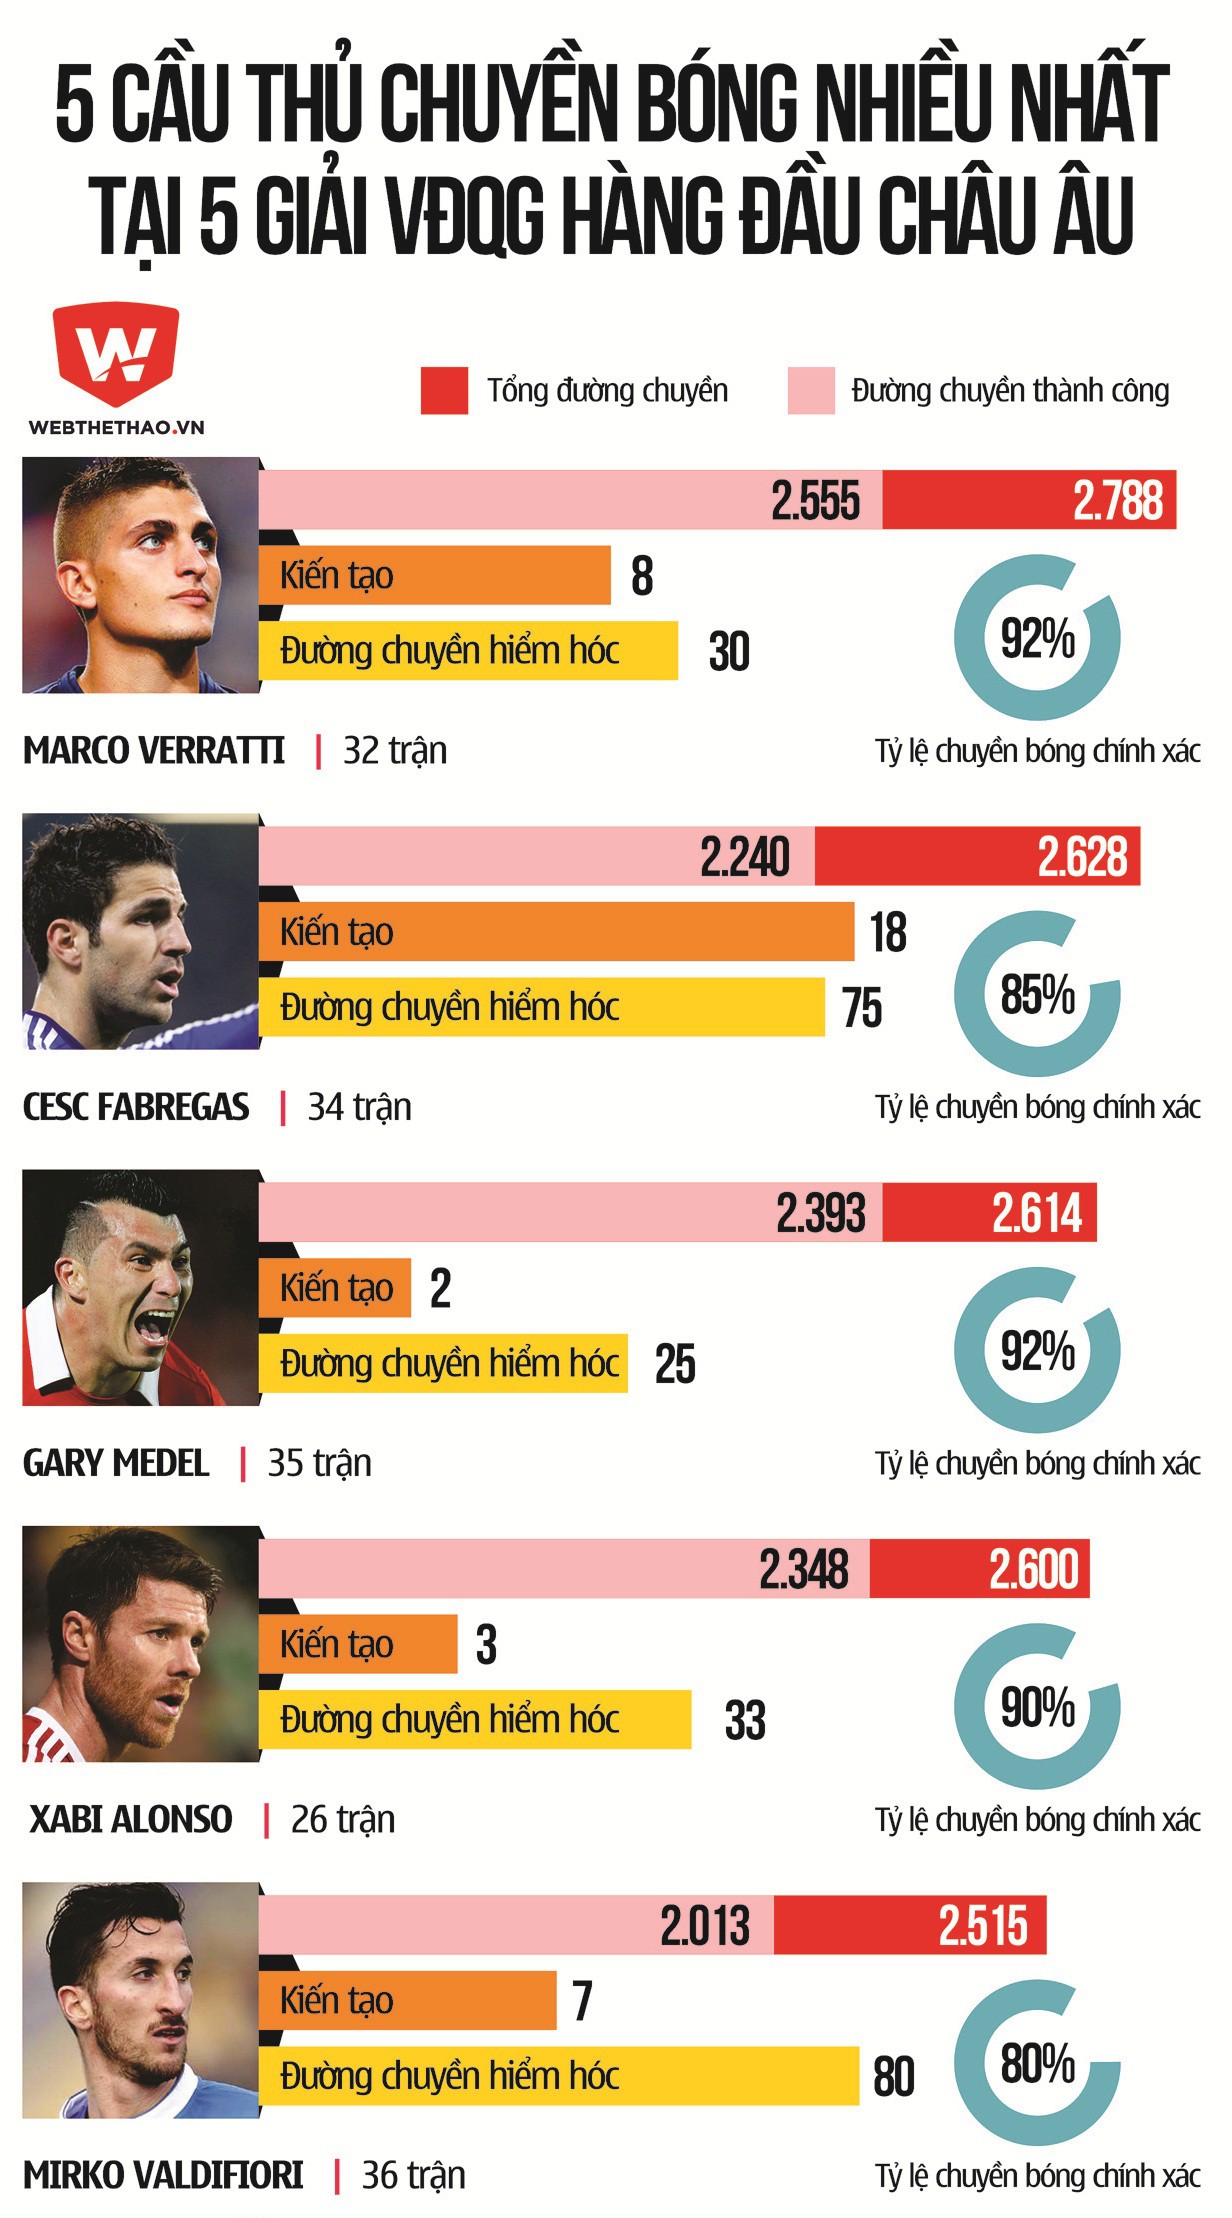 Fabregas là cầu thủ có số đường chuyền nhiều thứ 2 ở mùa giải 2014/15, chỉ sau Marco Verratti.